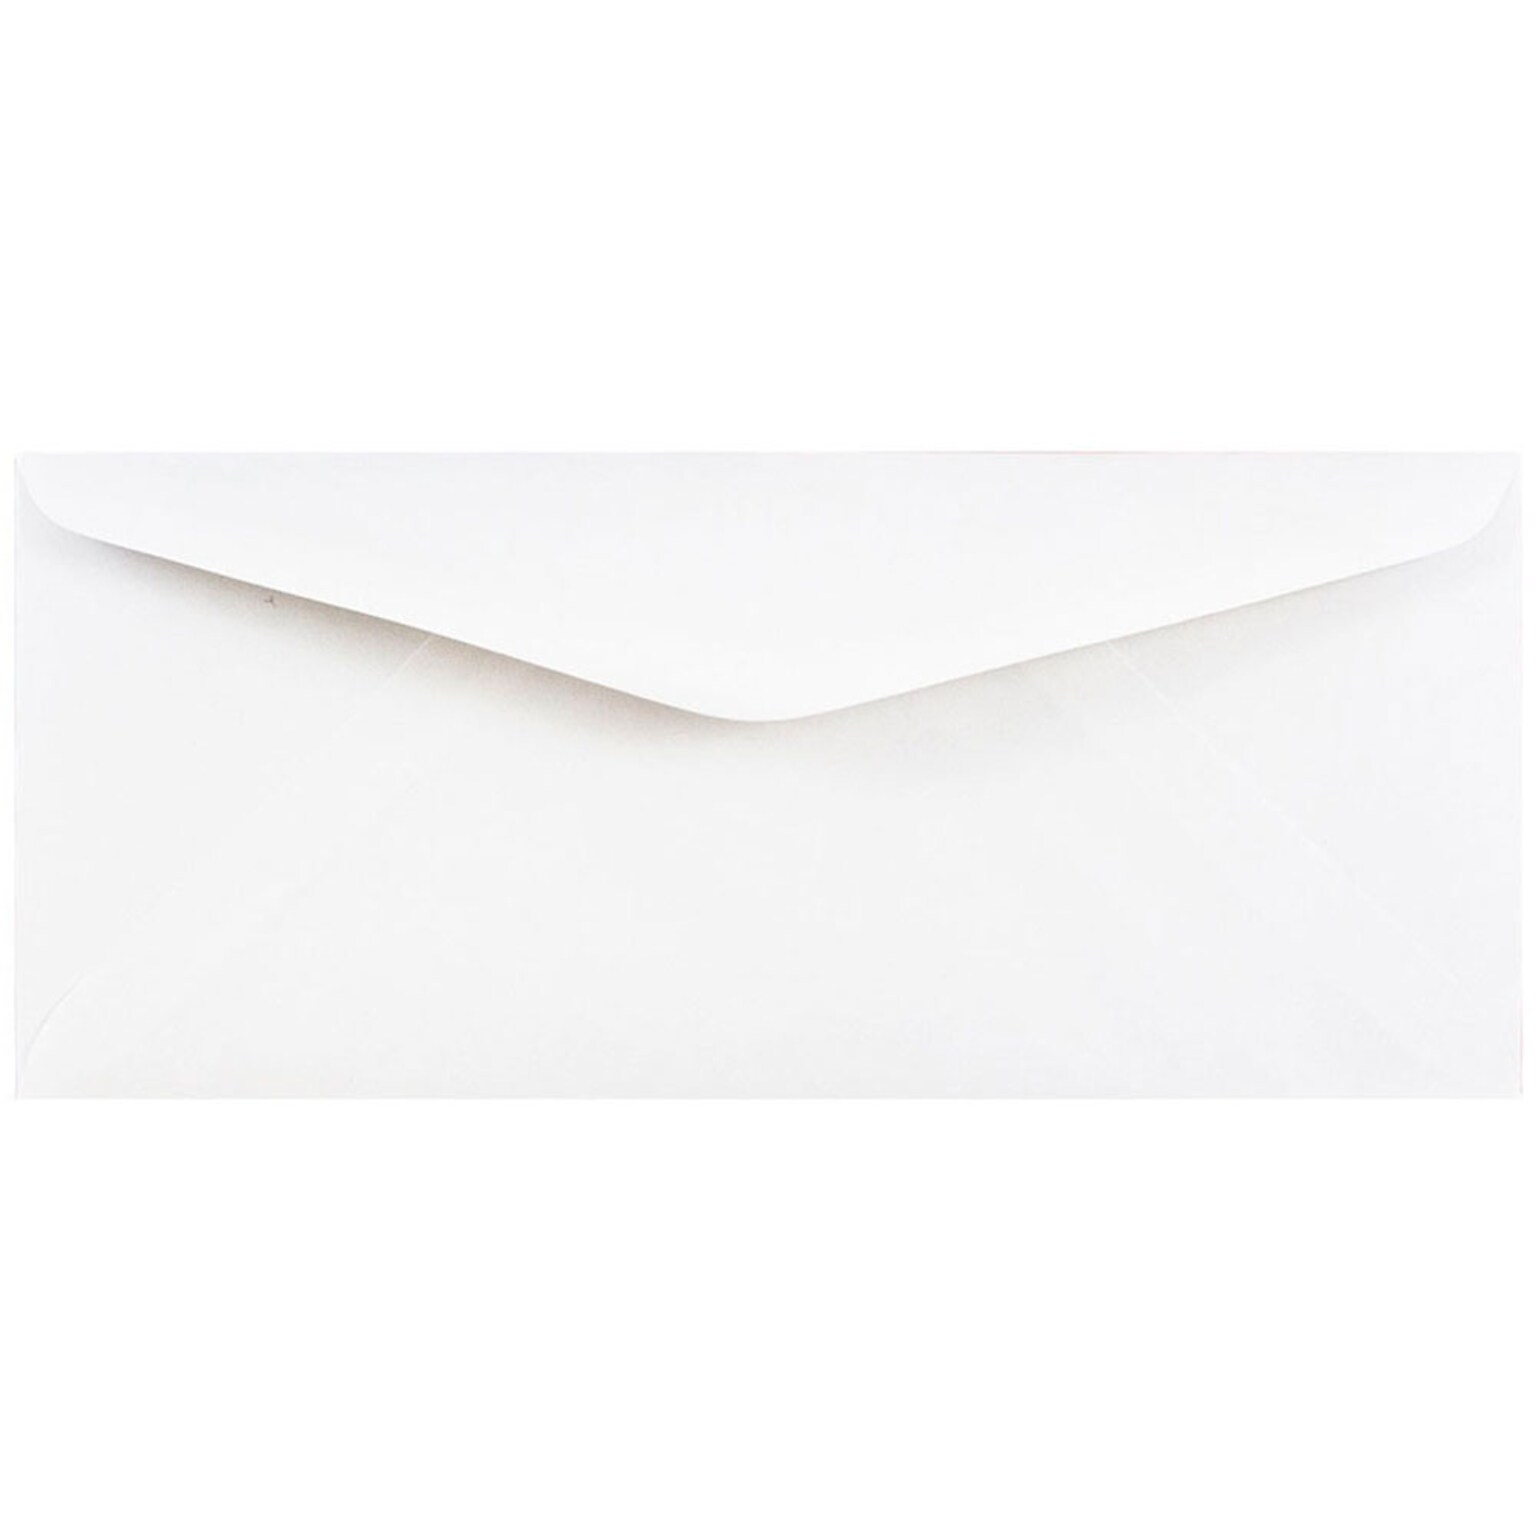 JAM Paper #11 Business Envelope, 4 1/2 x 10 3/8, White, 25/Pack (45179)